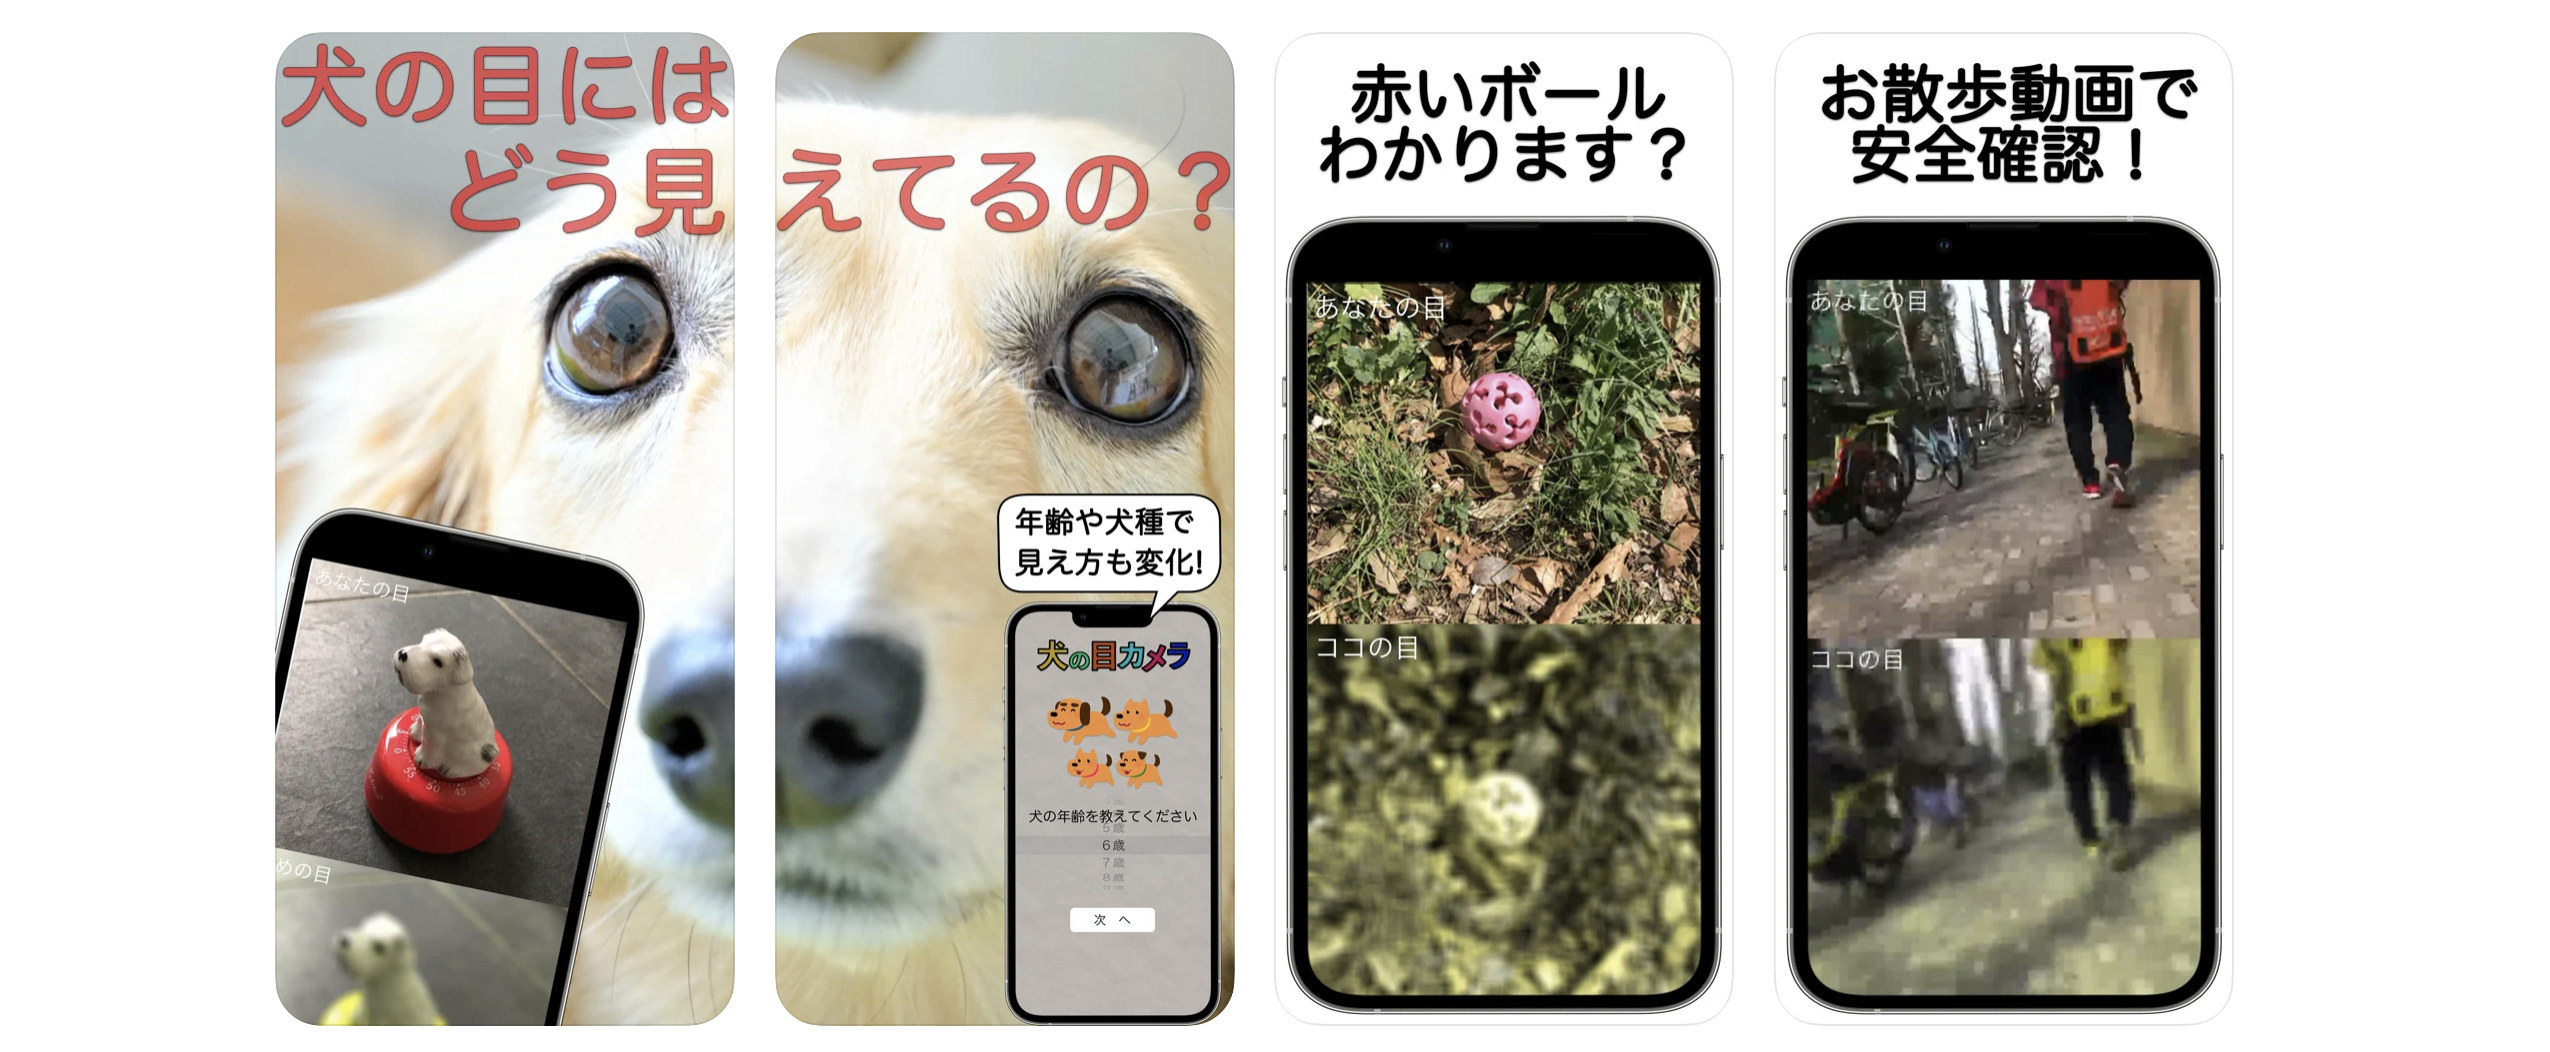 犬の視覚が疑似体験できるスマホアプリ「犬の目カメラ」がリリース